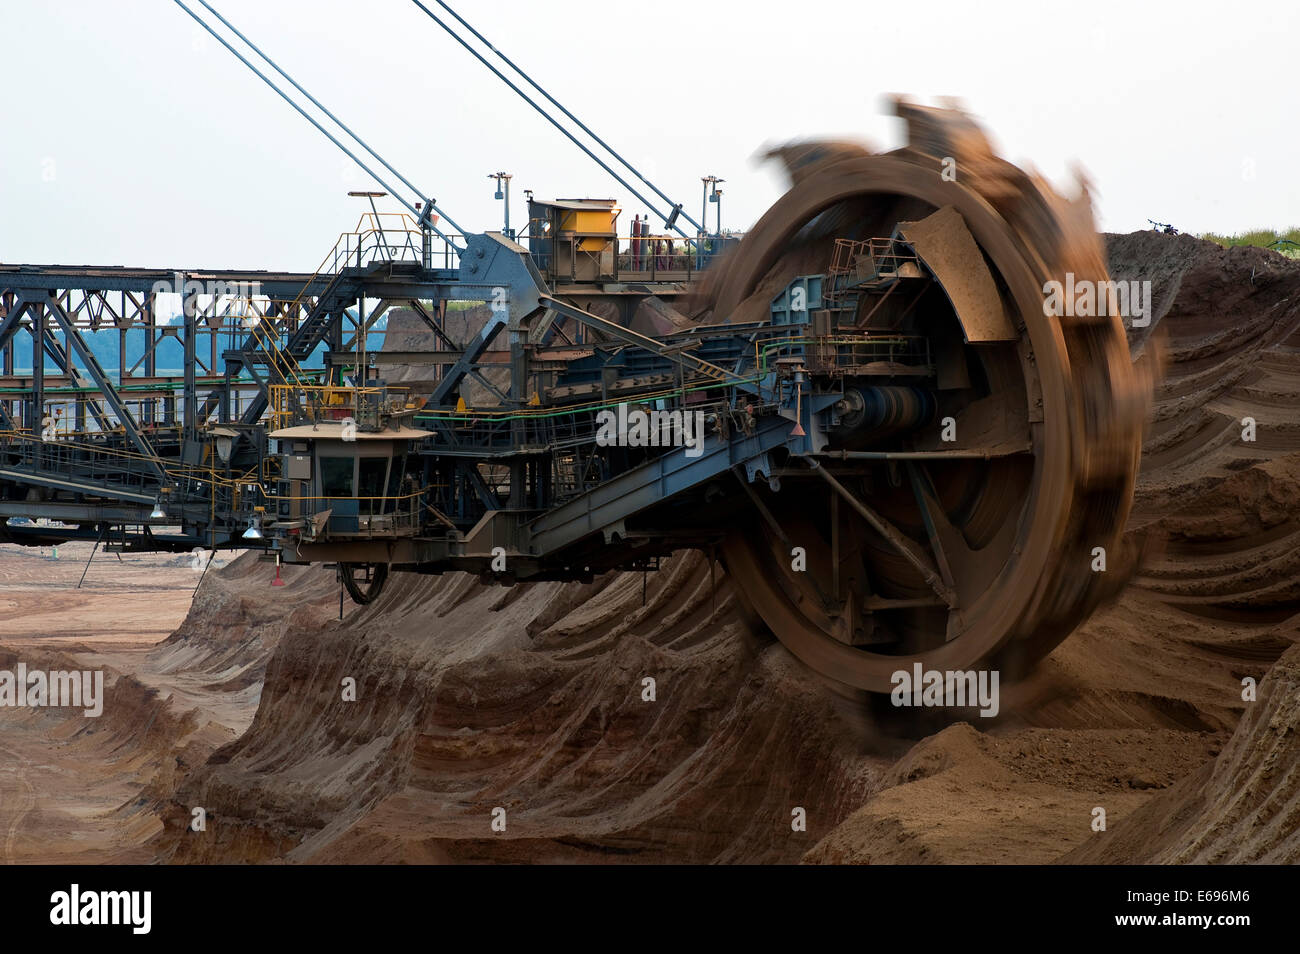 Ruotare la ruota della benna di un escavatore sovraccaricare, Grevenbroich, Nord Reno-Westfalia, Germania Foto Stock